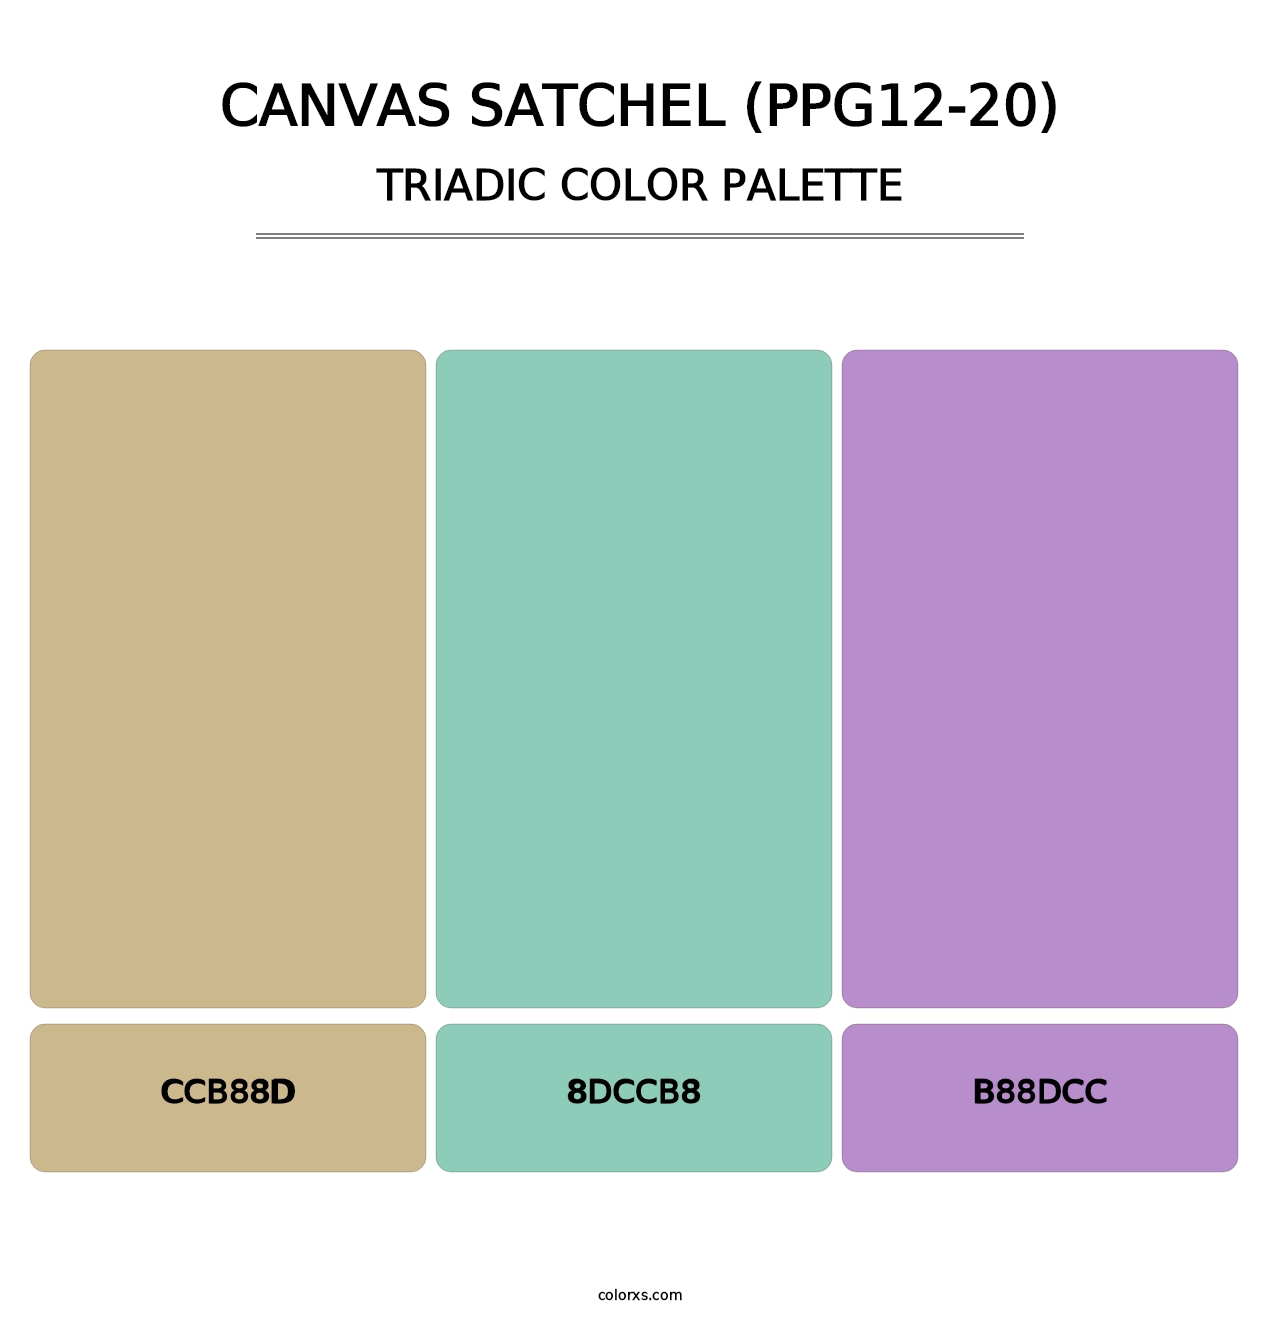 Canvas Satchel (PPG12-20) - Triadic Color Palette